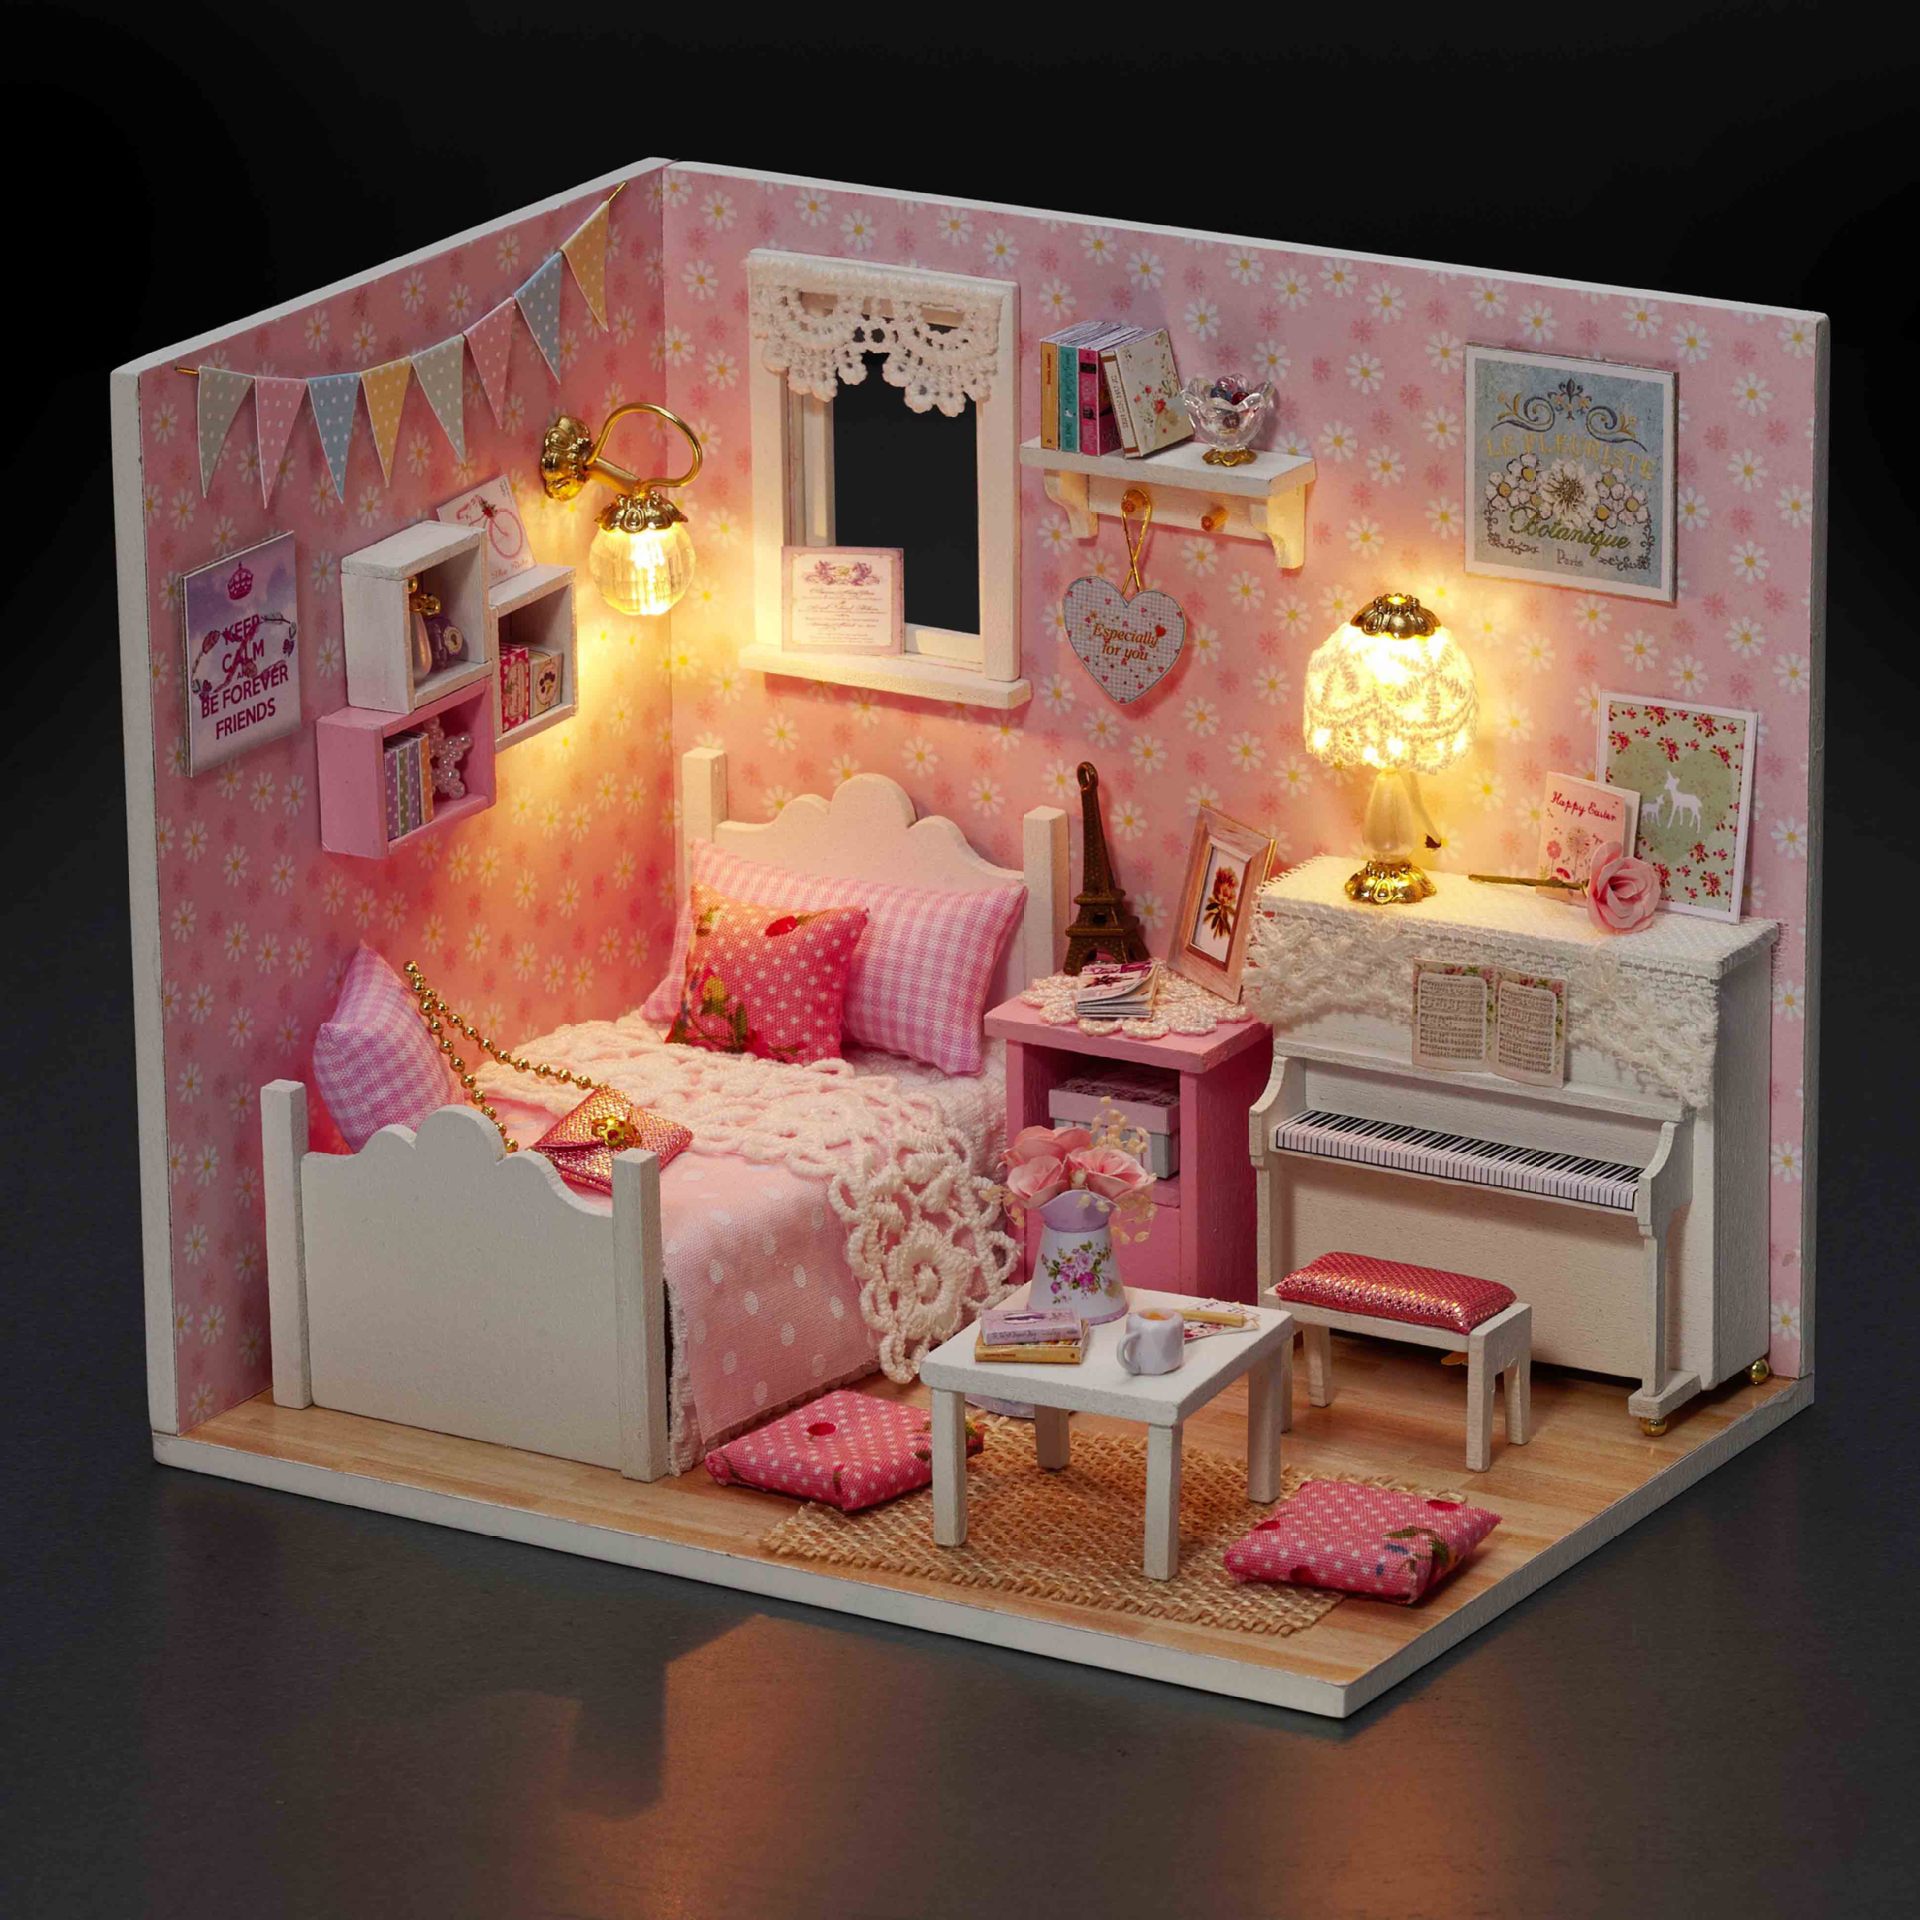 清新微型公主房创意 diy小屋手工拼装模型小房子女生儿童生日礼物